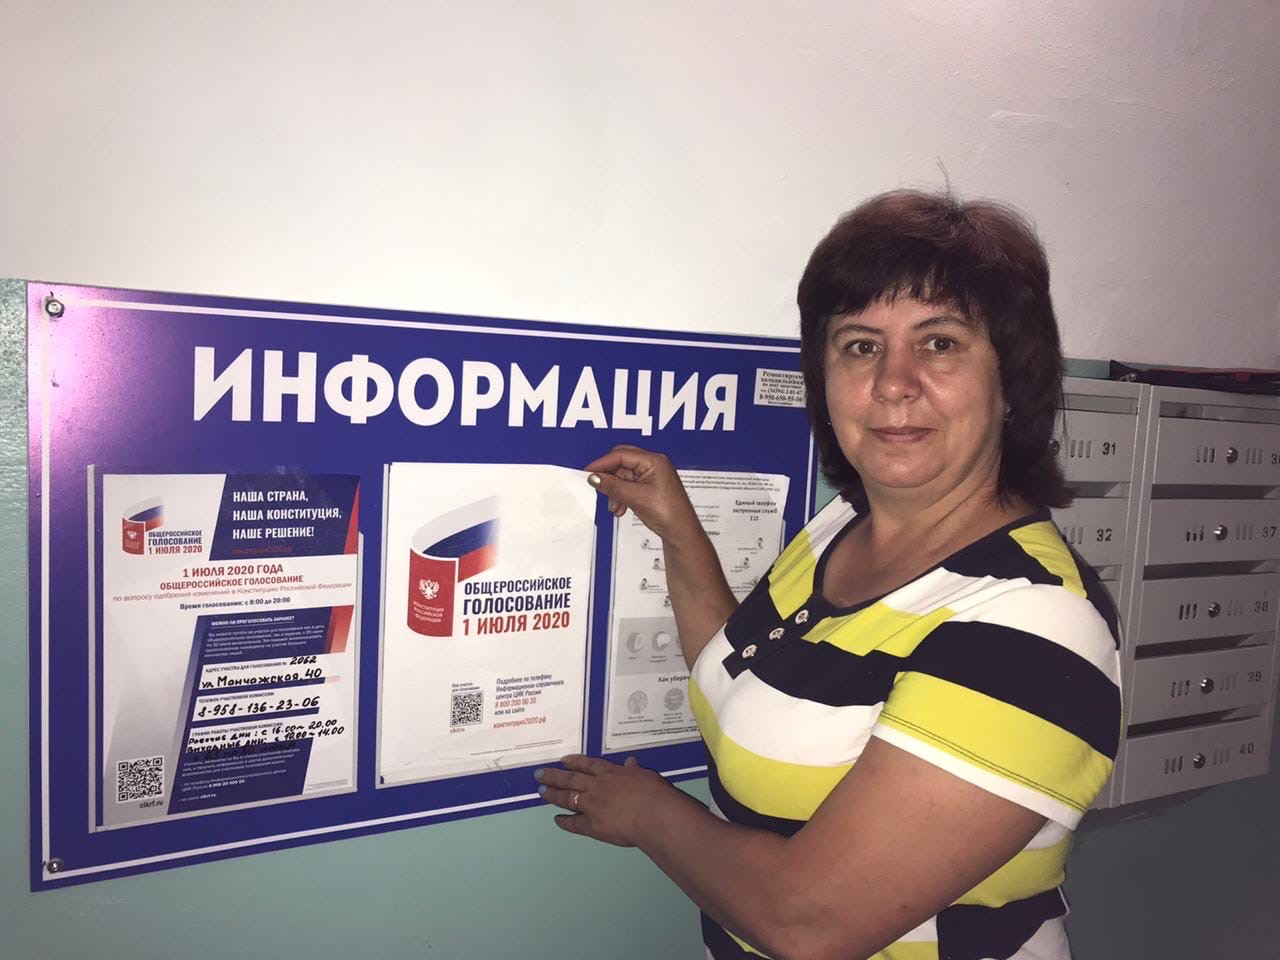 Где можно проголосовать. Как можно проголосовать. Участковая избирательная комиссия номер 1 Москва. Где можно проголосовать в краснодаре